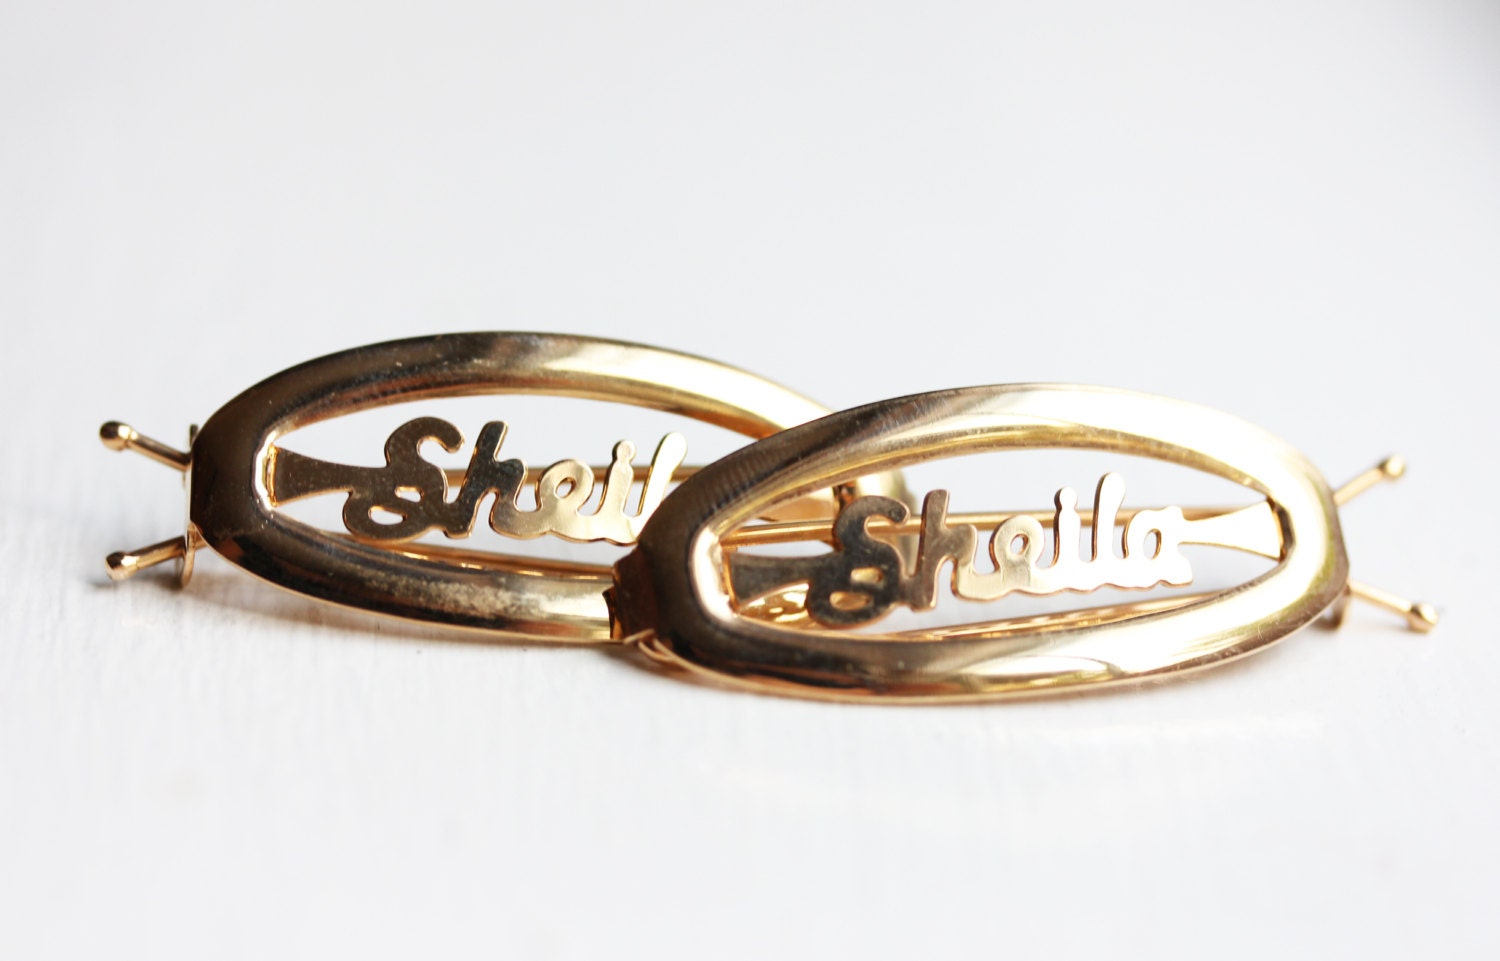 Sheila Haarspangen Gold, Name Haarspangen, Vintage Gold Clips, Schmuck von diamentdesigns